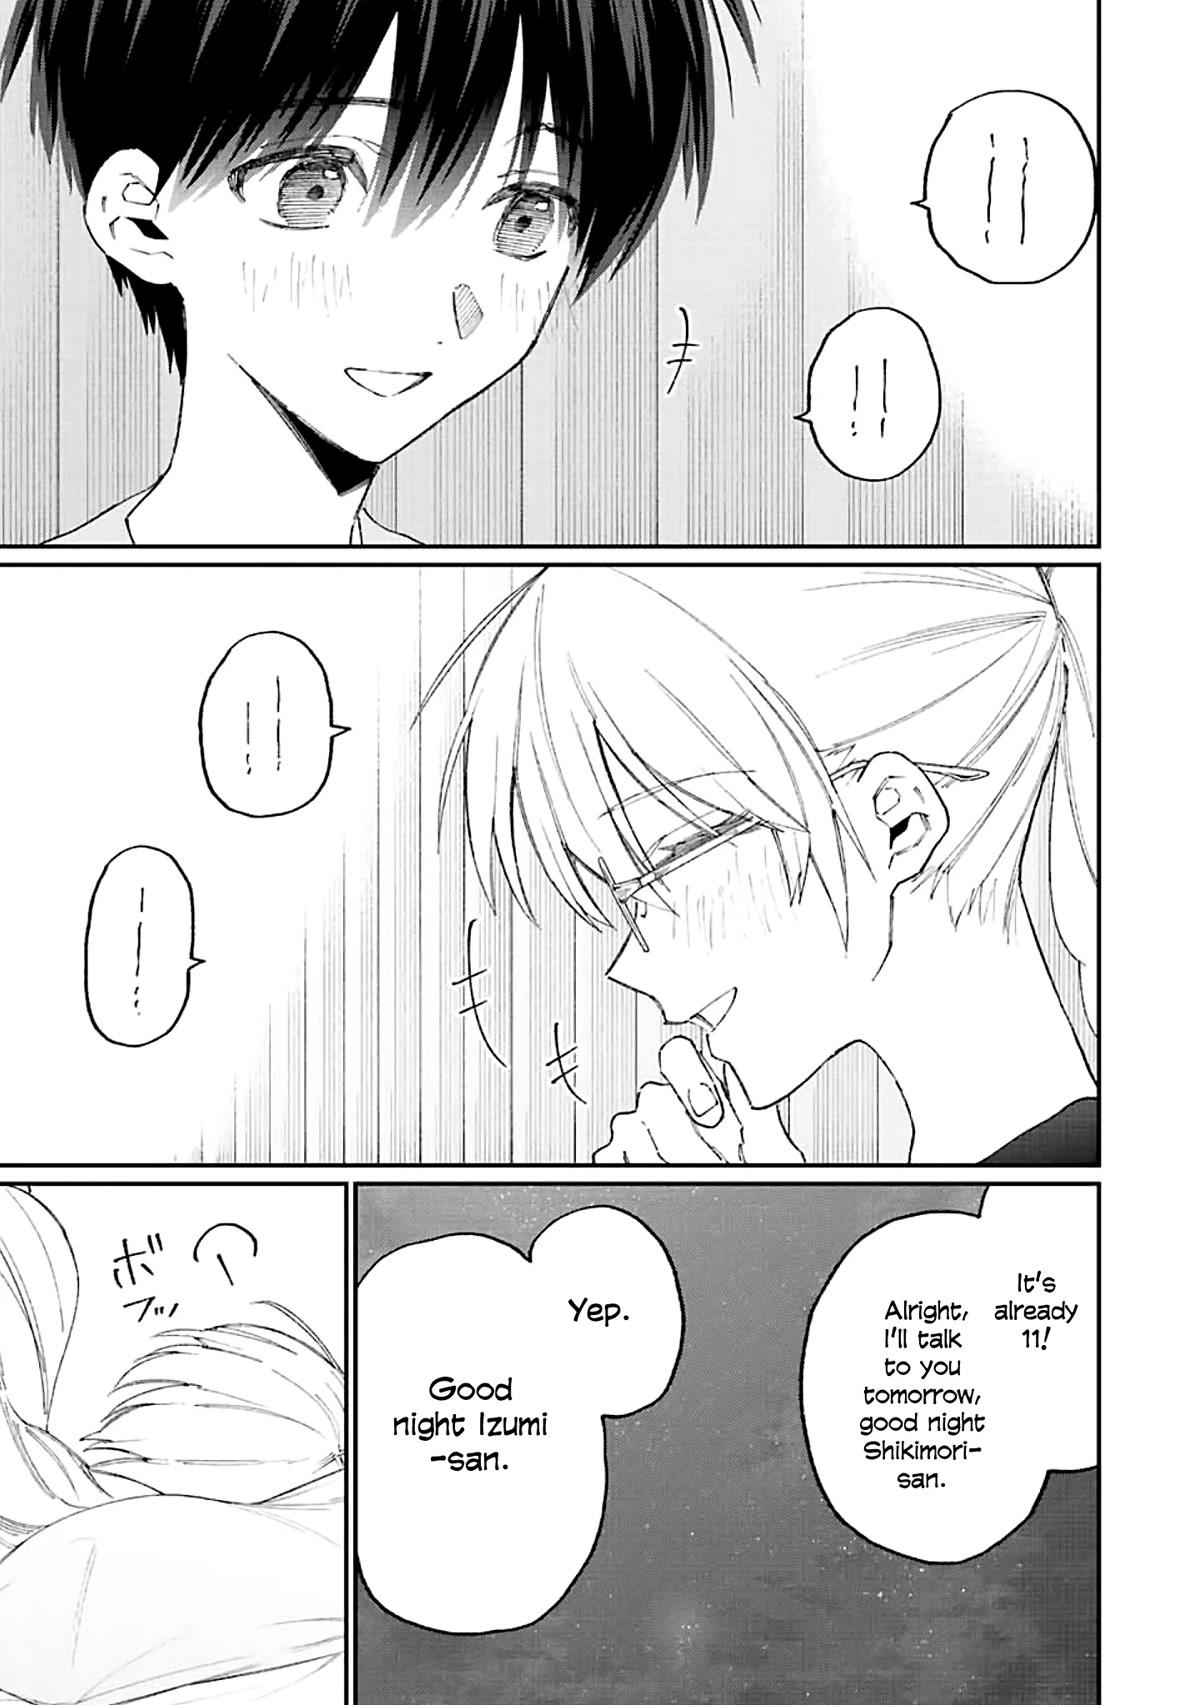 Read Shikimoris Not Just A Cutie Chapter 158 On Mangakakalot